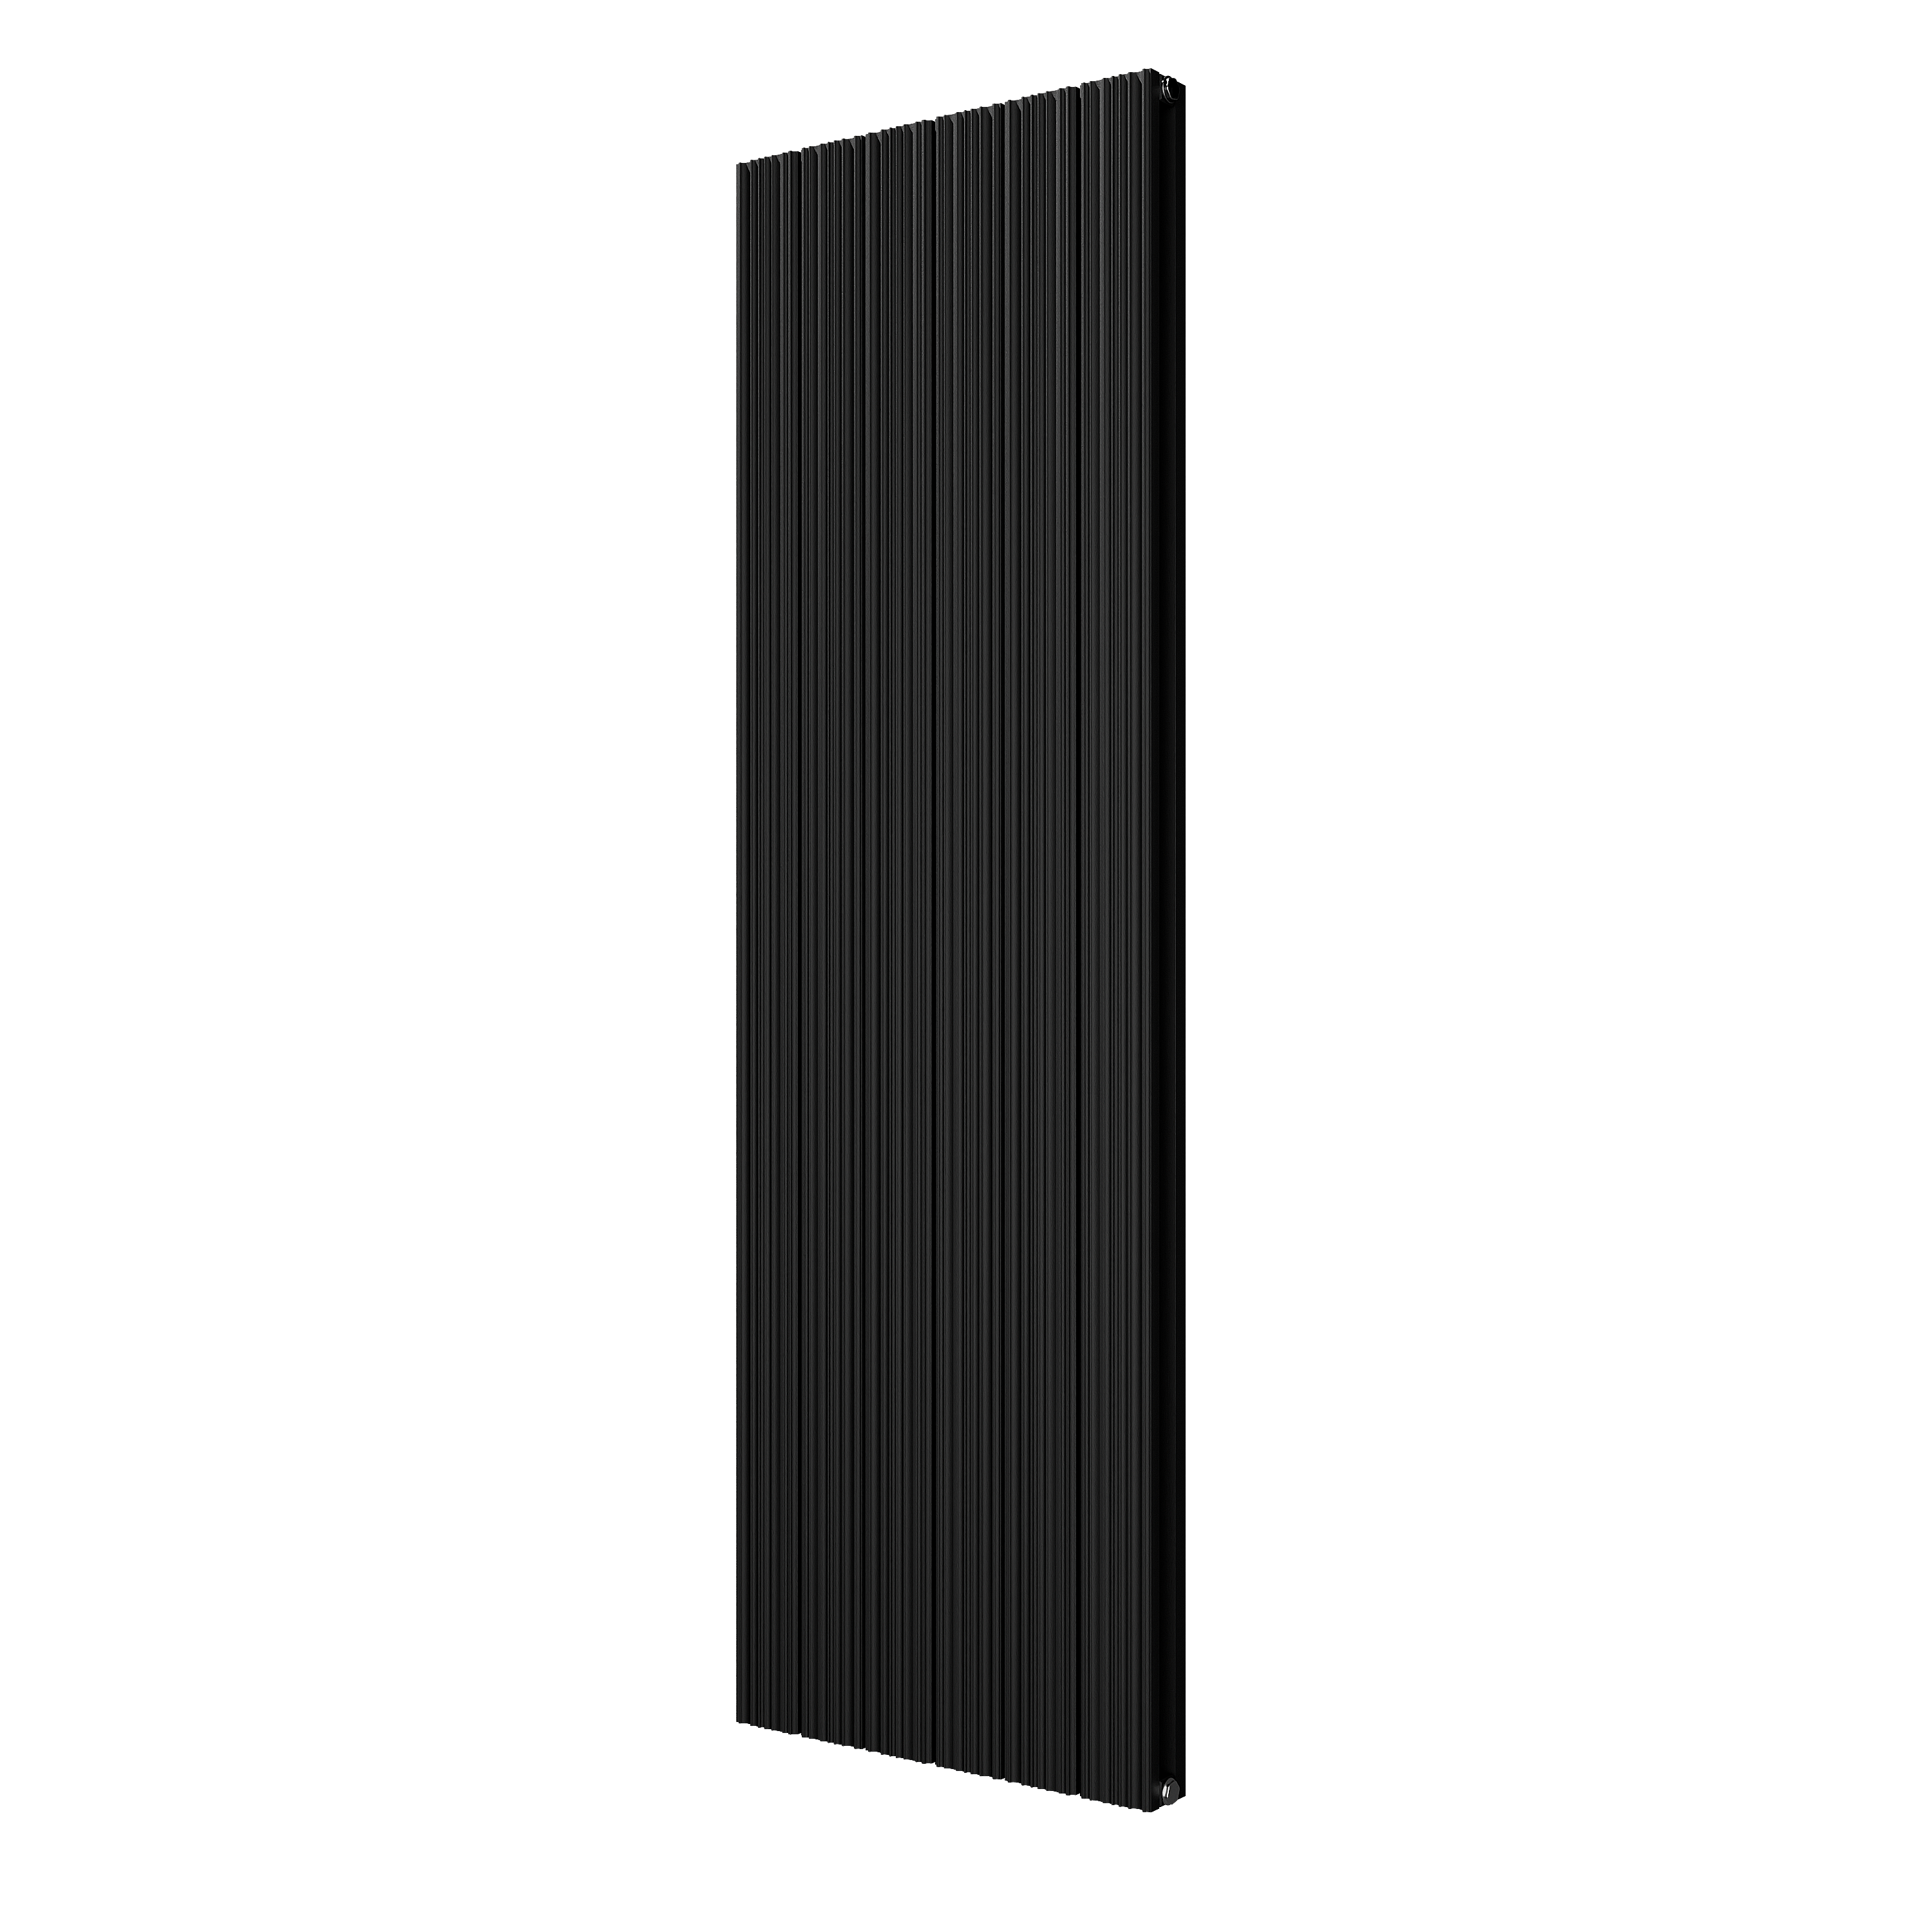 VIPERA Mares dubbele handdoekradiator 56,5 x 180 cm centrale verwarming mat zwart zij- en middenaansluiting 1,851W